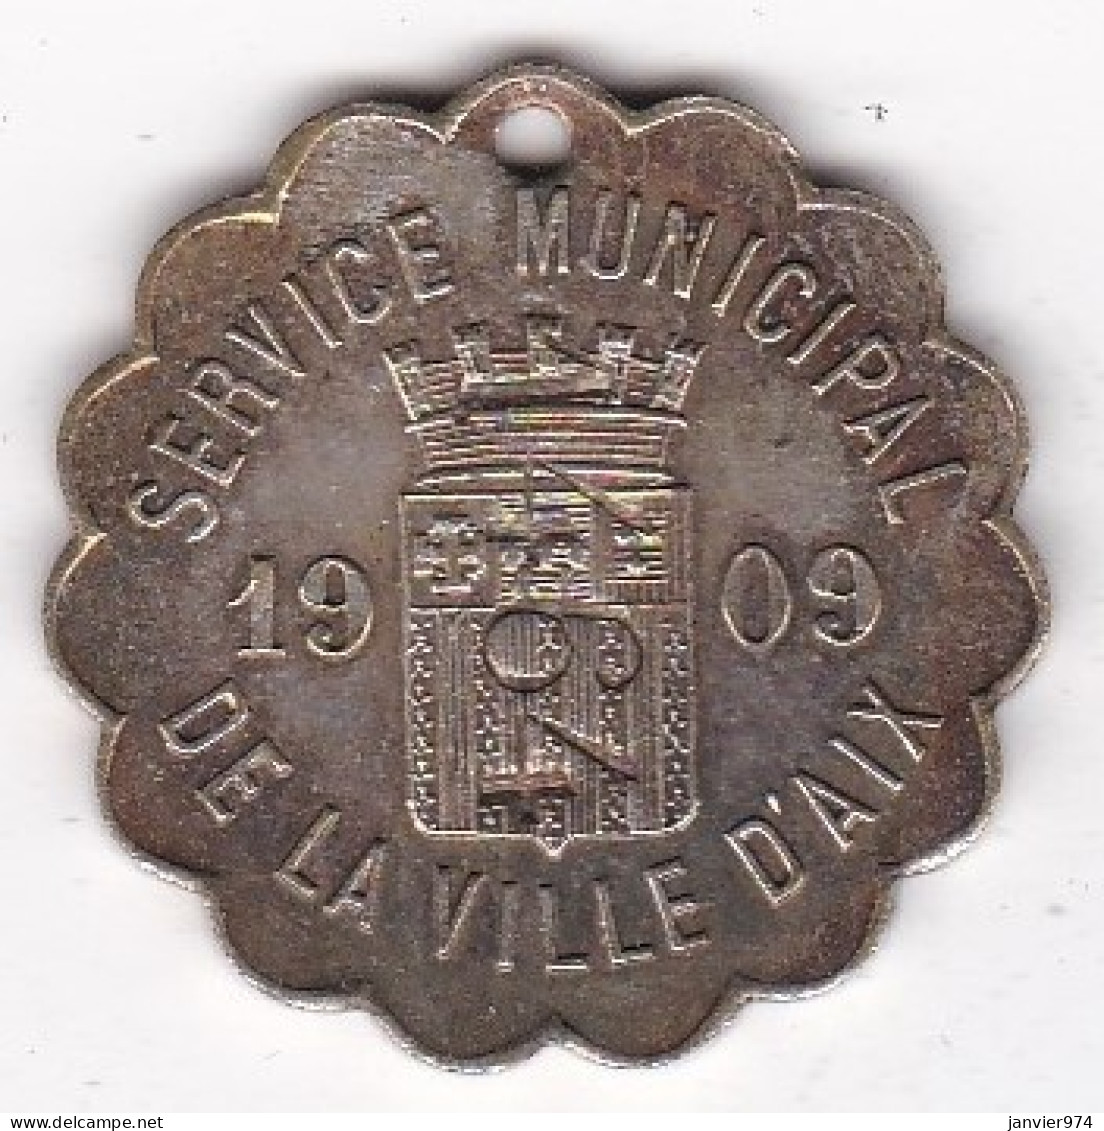 Aix-en-Provence Jeton Service Municipal De La Ville D’AIX 1909.  Taxe De Chien. Contremarqué 1464 - Professionnels / De Société